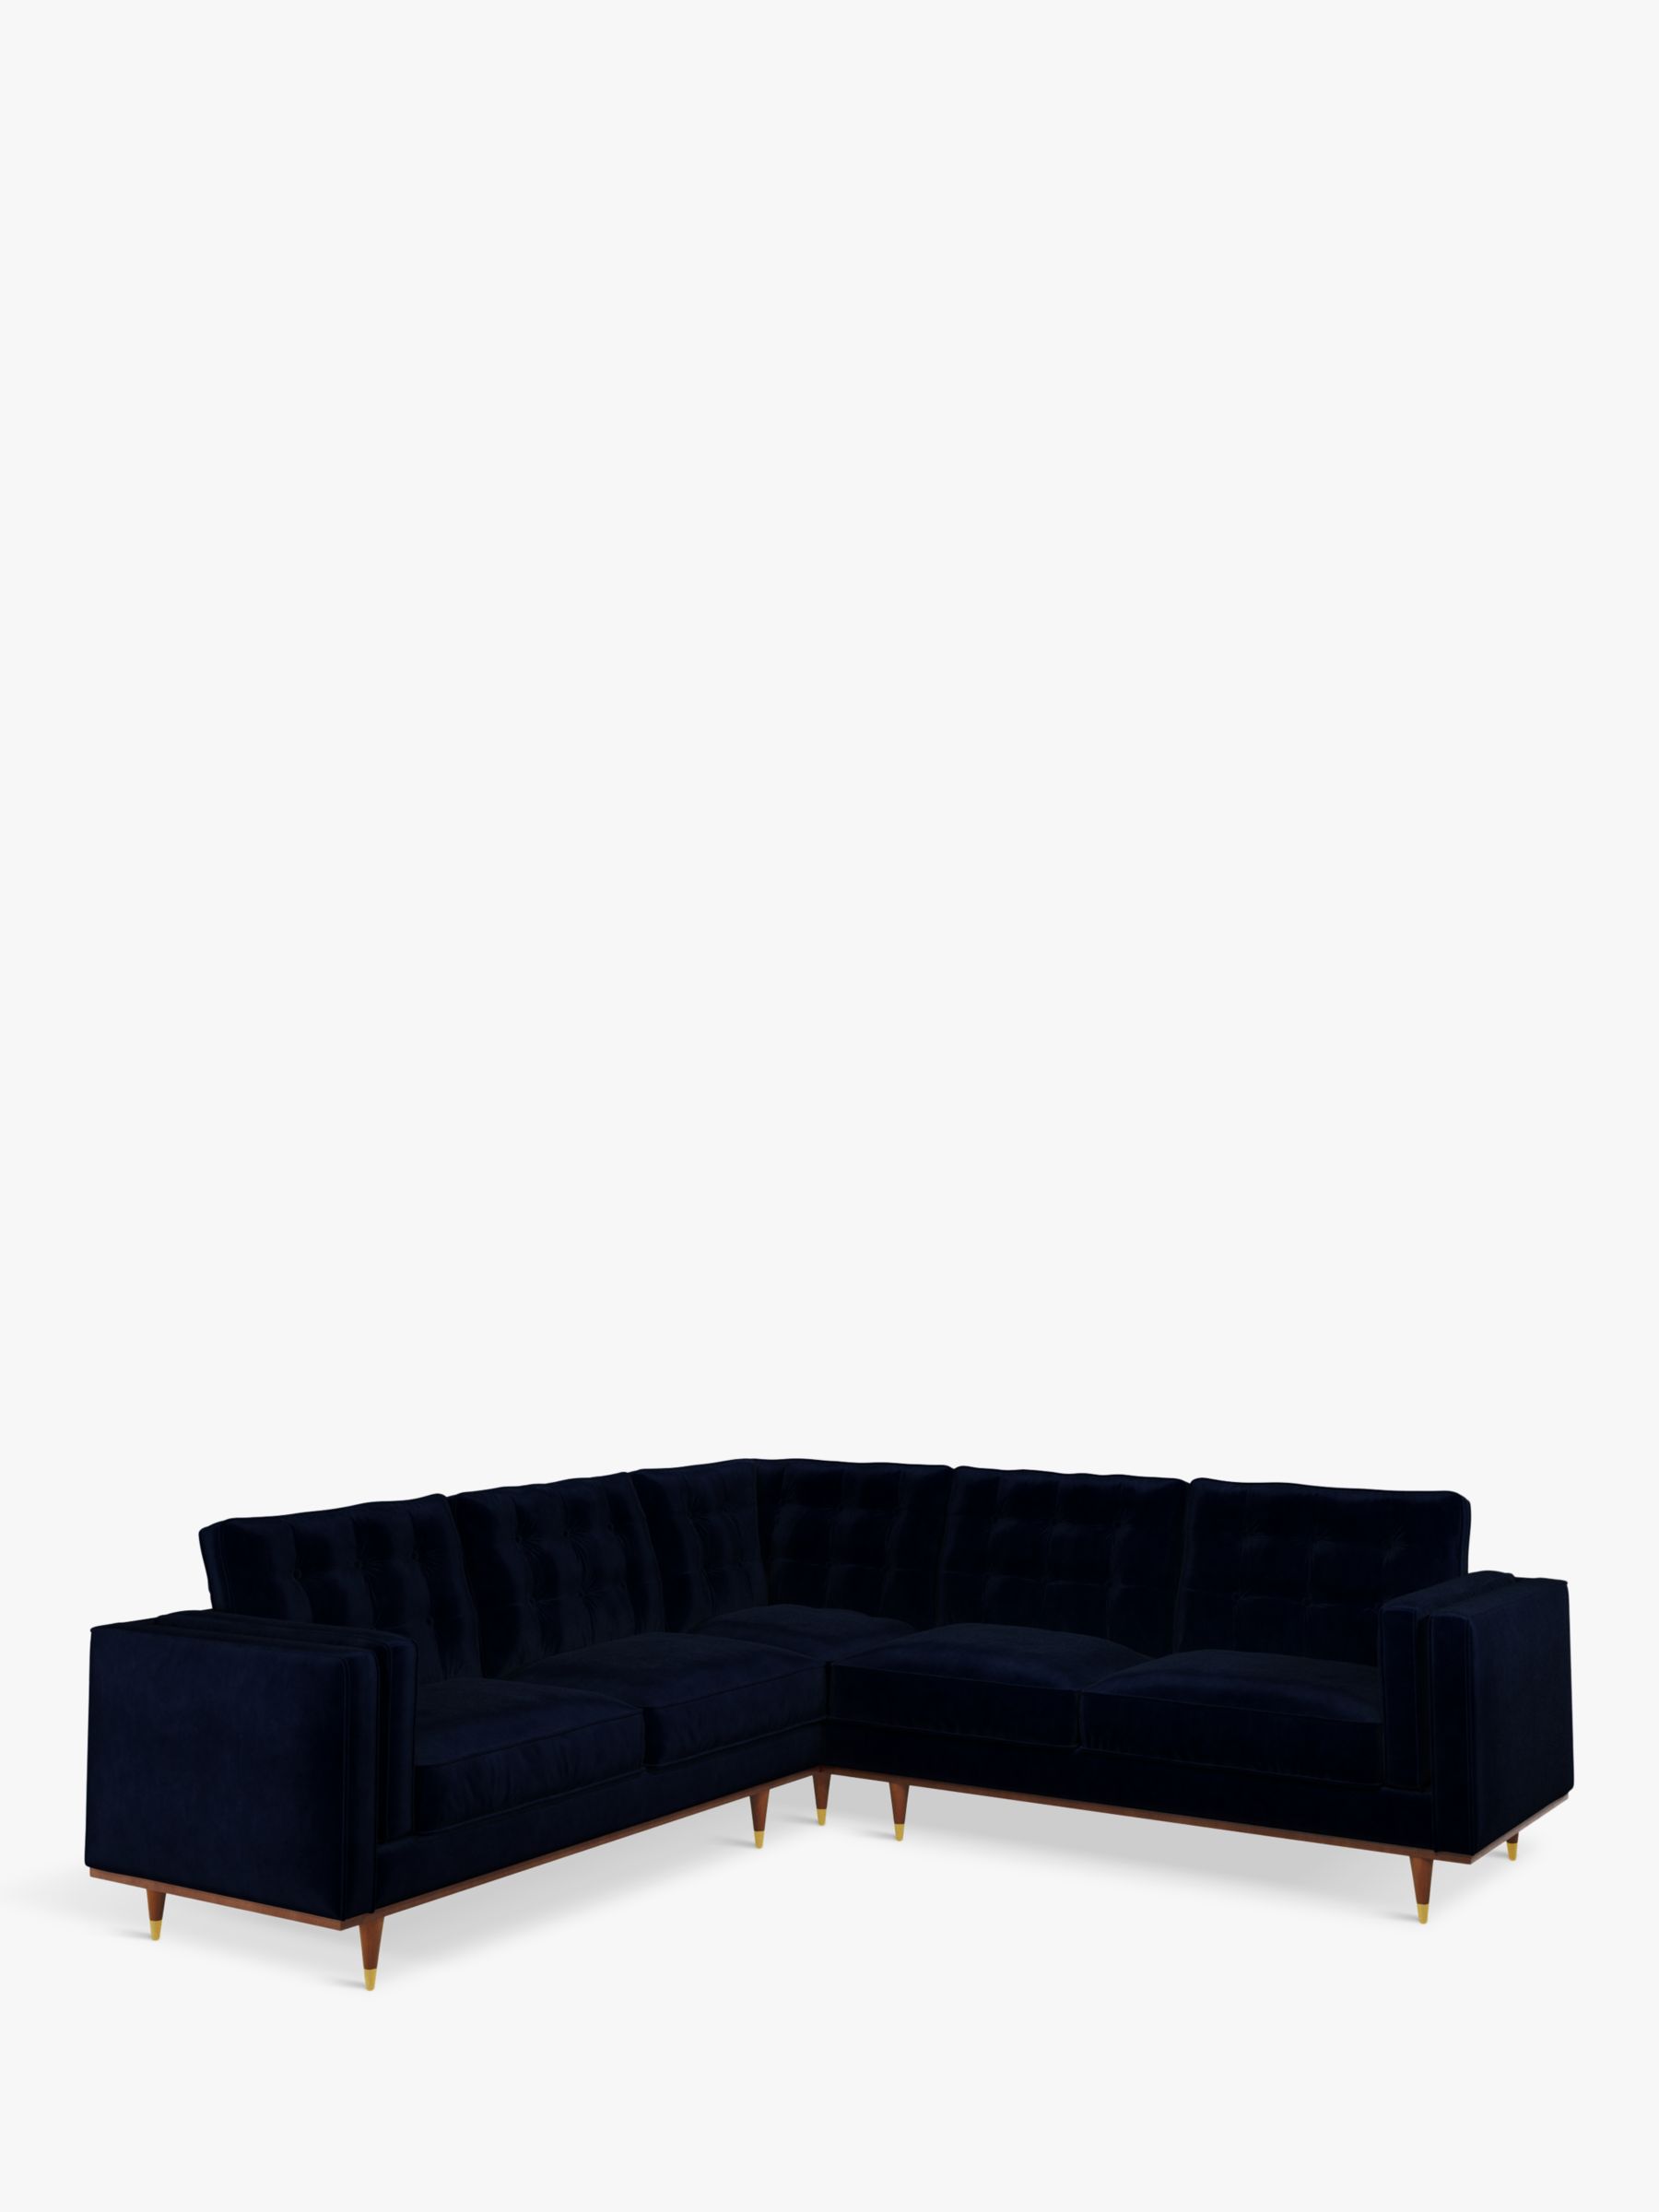 Photo of John lewis + swoon lyon large 5+ seater corner sofa